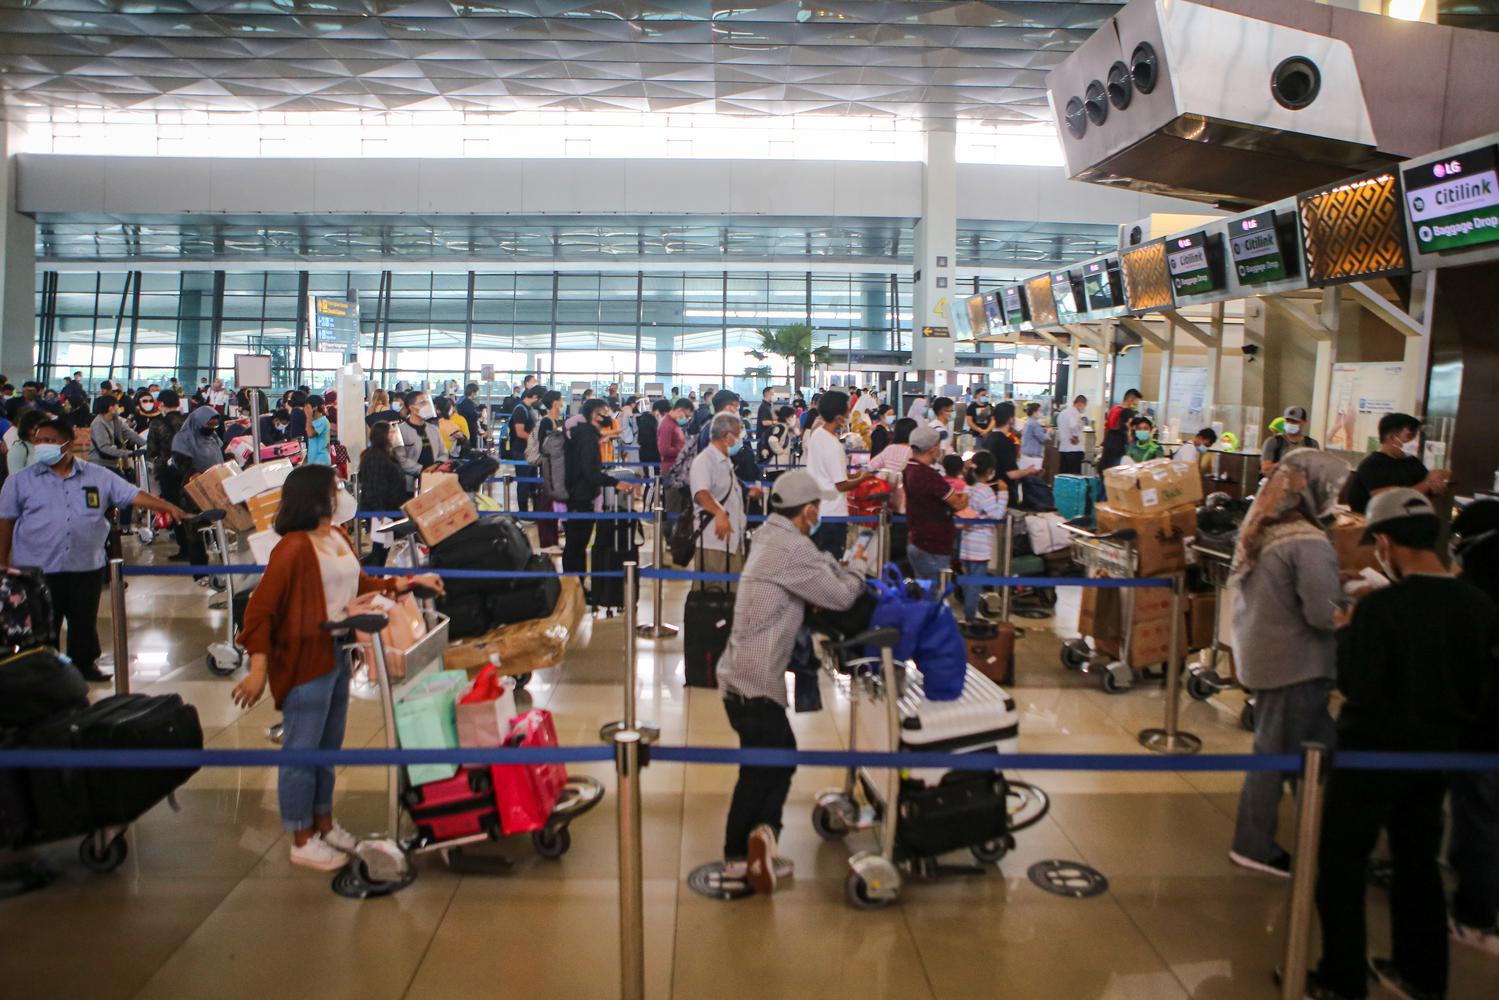 Calon penumpang mengantre untuk check in di Terminal 3 Bandara Soekarno Hatta, Tangerang, Banten, Kamis (17/12/2020). PT Angkasa Pura II memprediksi lalu lintas angkutan udara 2,1 juta penumpang pada periode angkutan Natal dan Tahun Baru 2021.